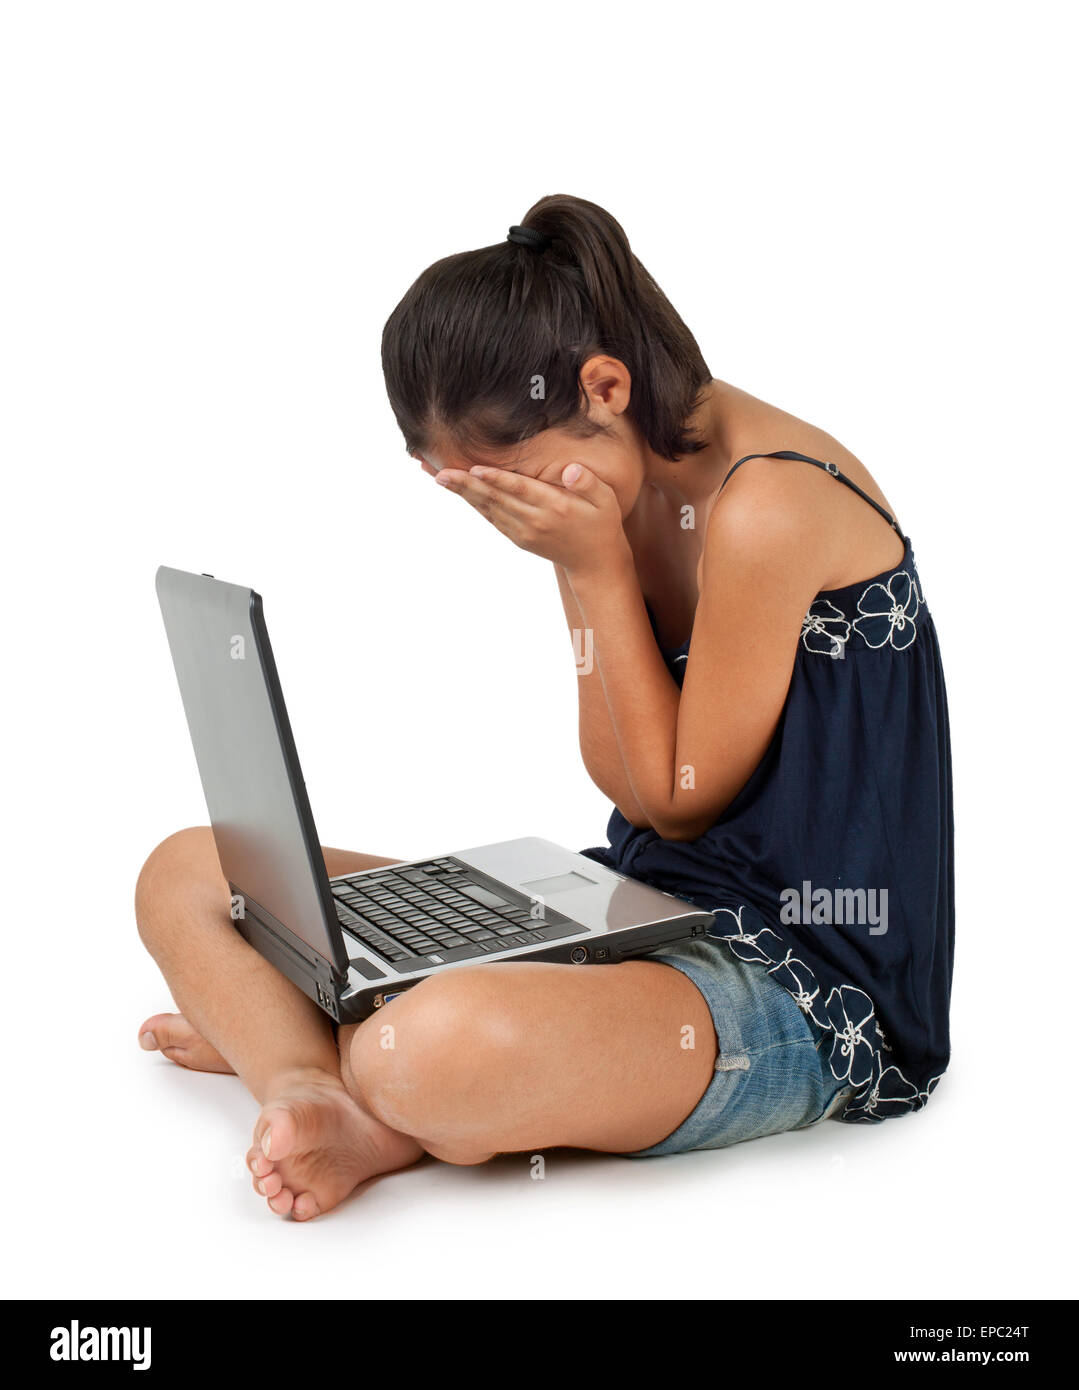 Giovane ragazza adolescente a piangere davanti al portatile su sfondo bianco. Foto Stock